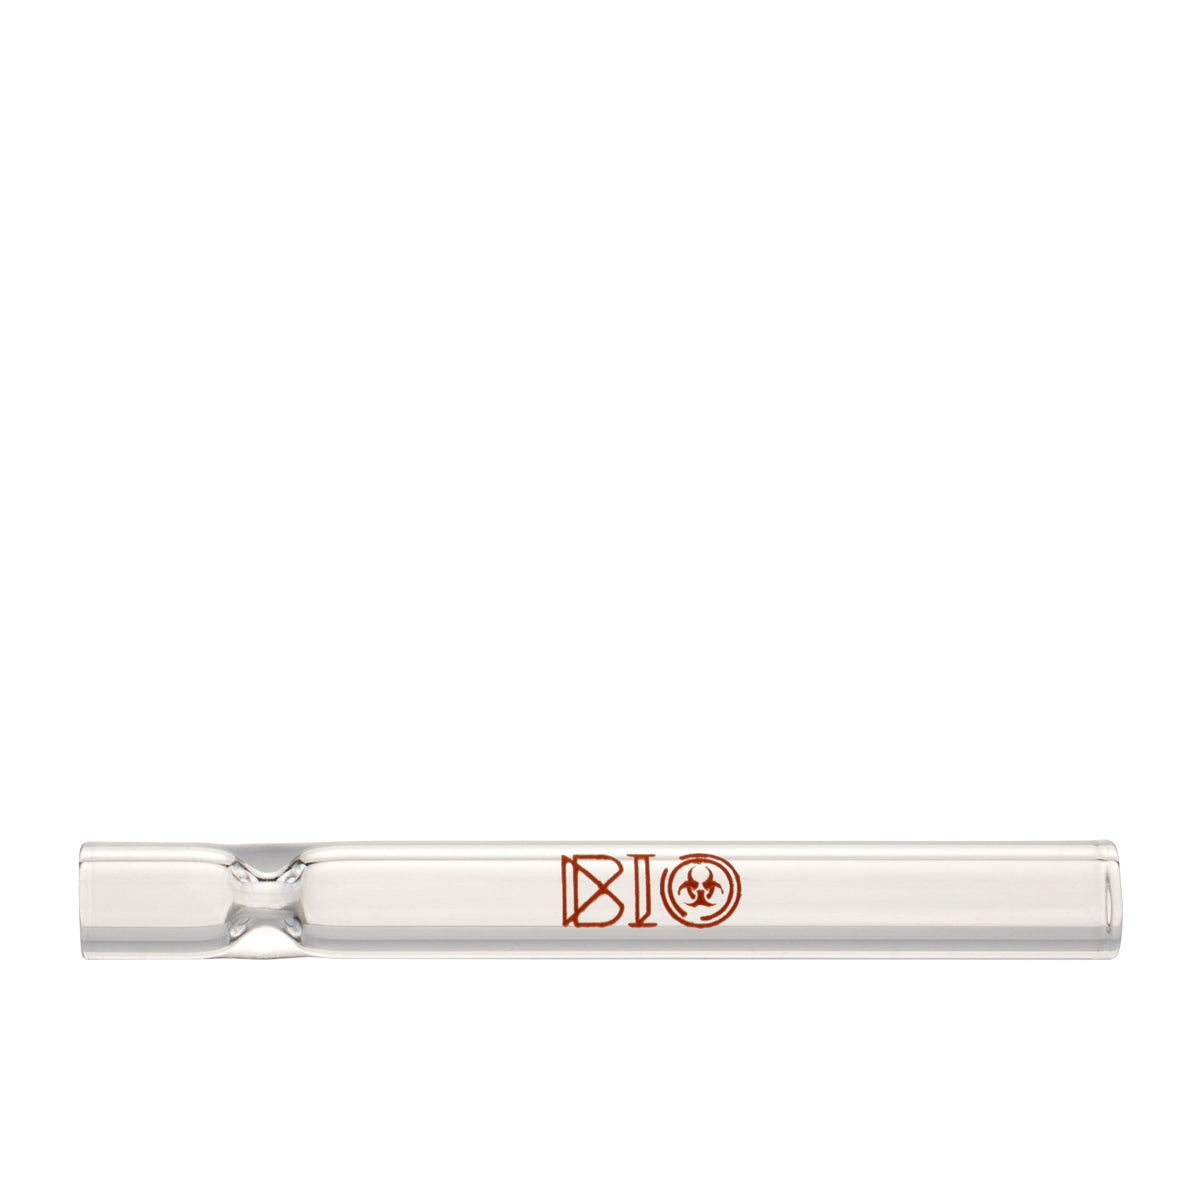 BIO Glass | BIOSTIX Chillums Refill Kit | 4" - Glass - 100pcs + 50pcs FREE Glass Chillum Hand Pipe Bio Glass   